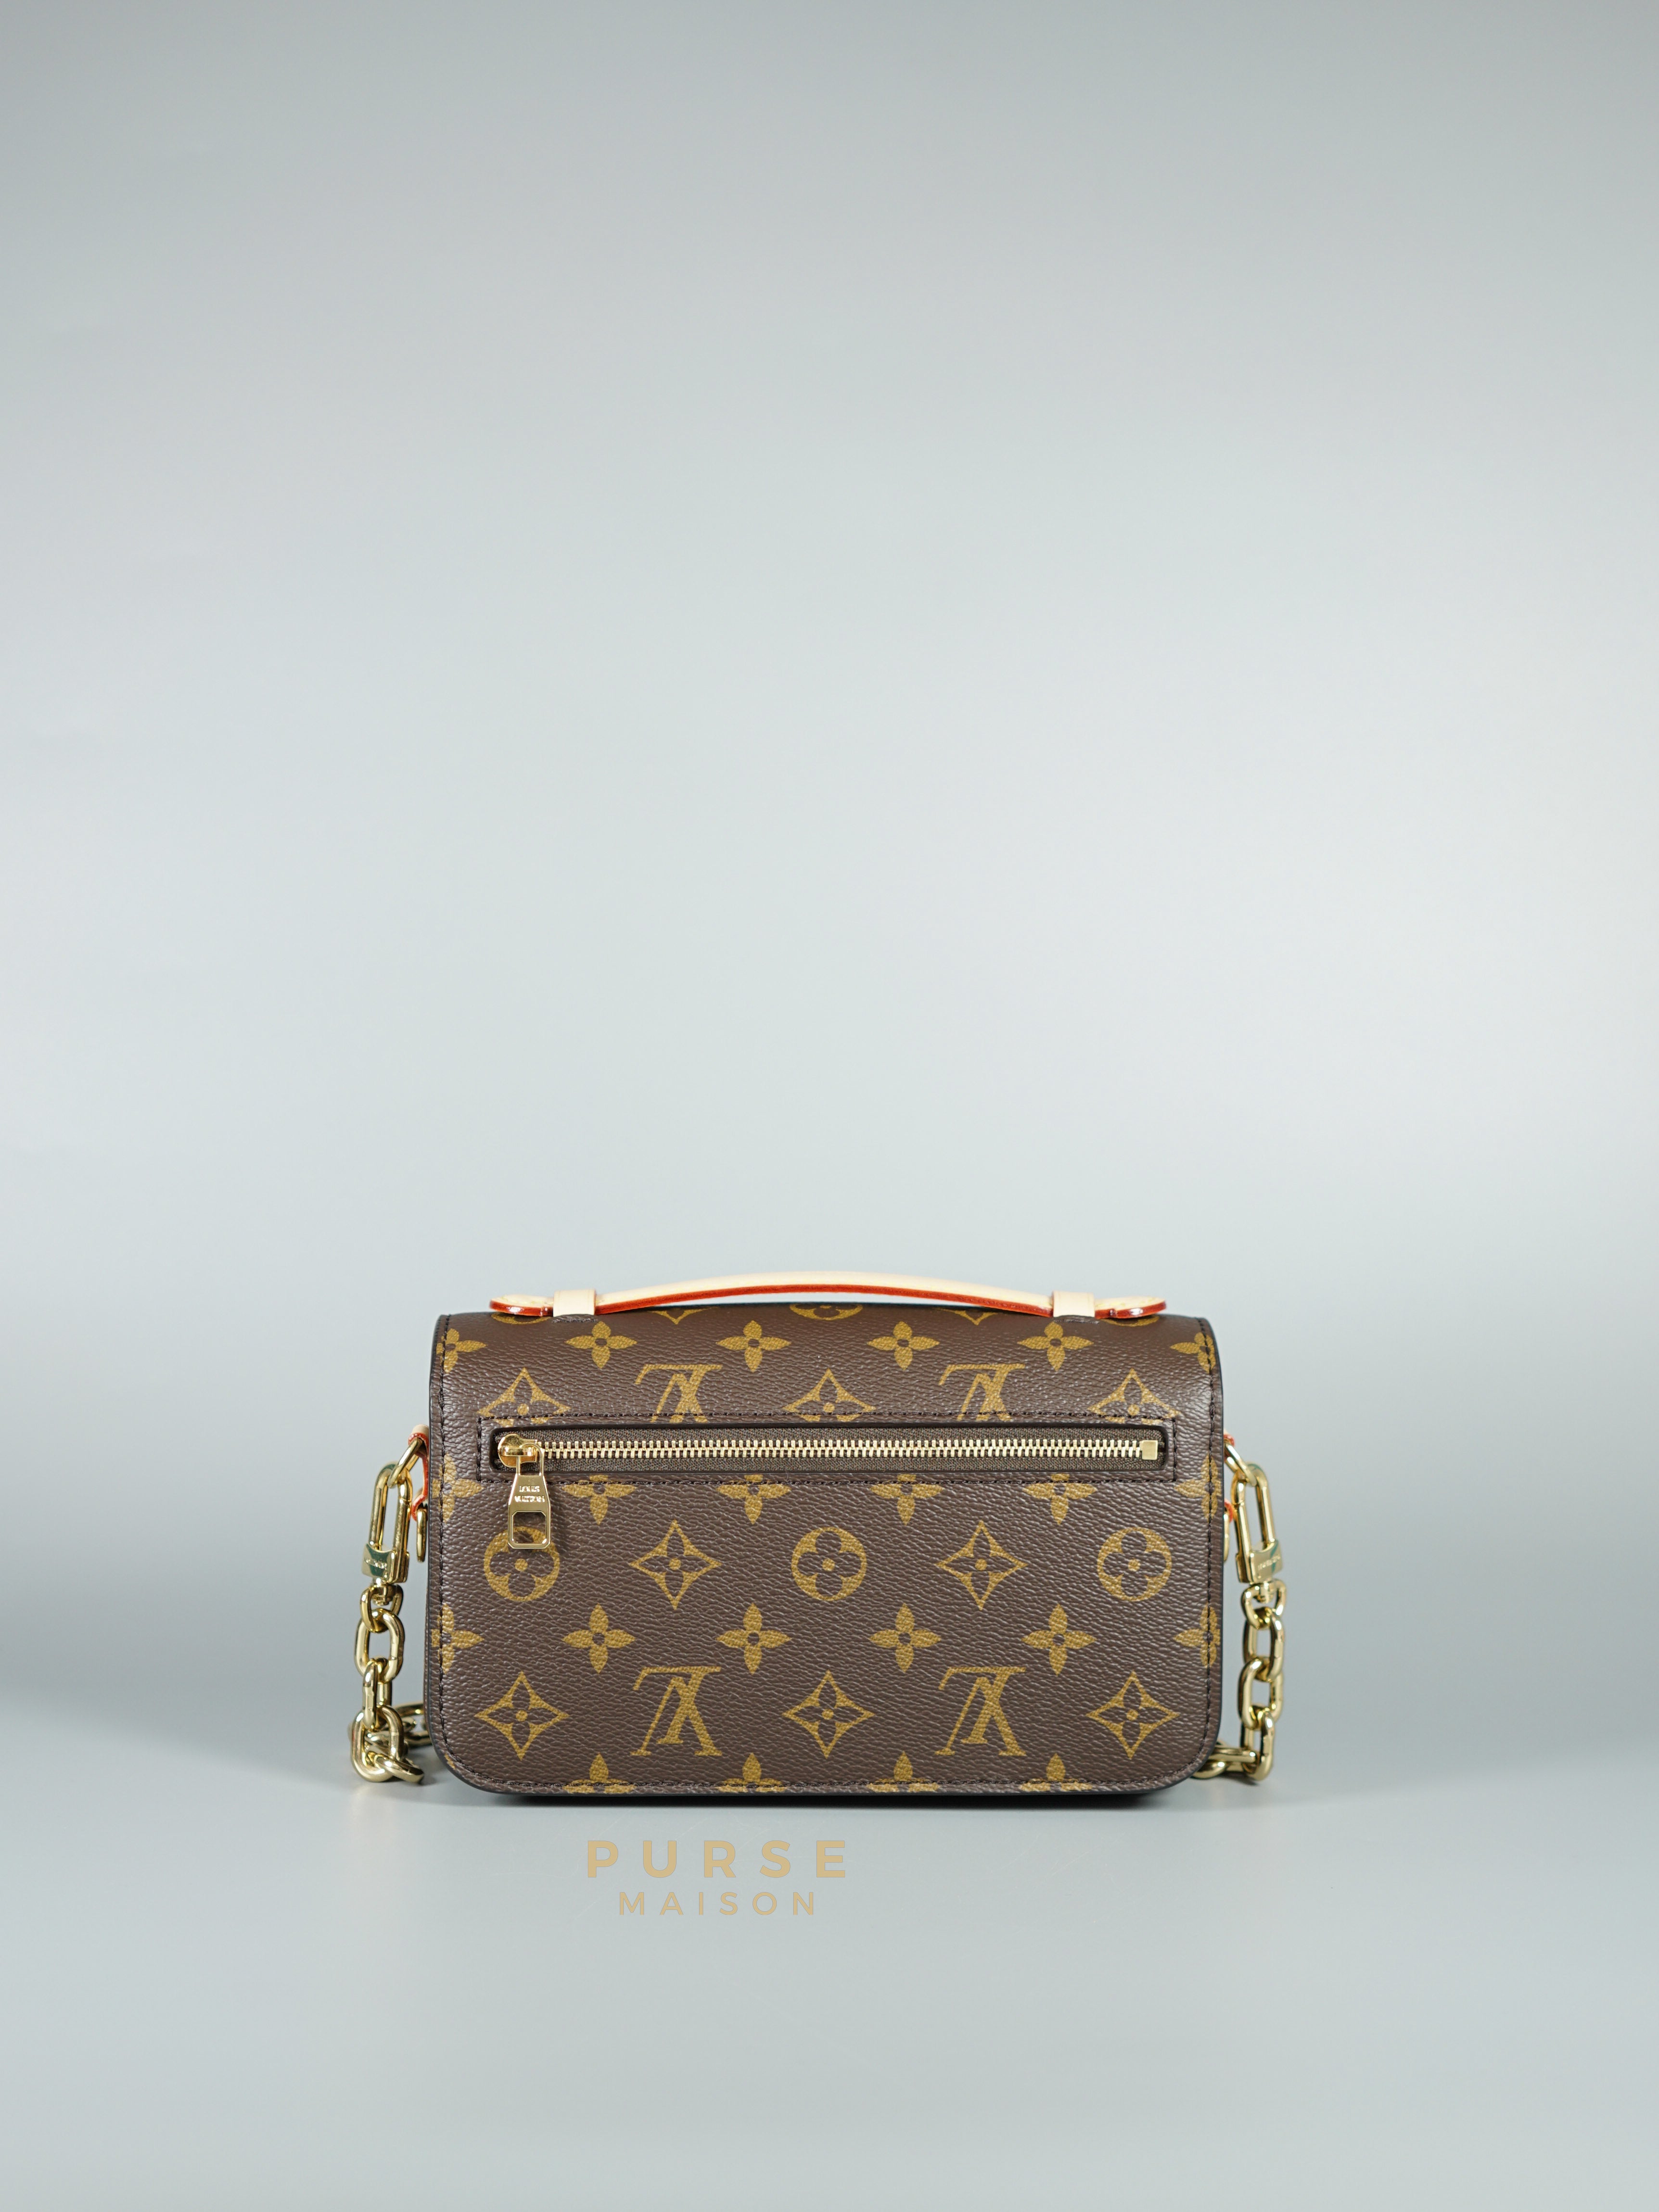 Louis Vuitton Metis East West in Monogram Canvas (Microchip) | Purse Maison Luxury Bags Shop